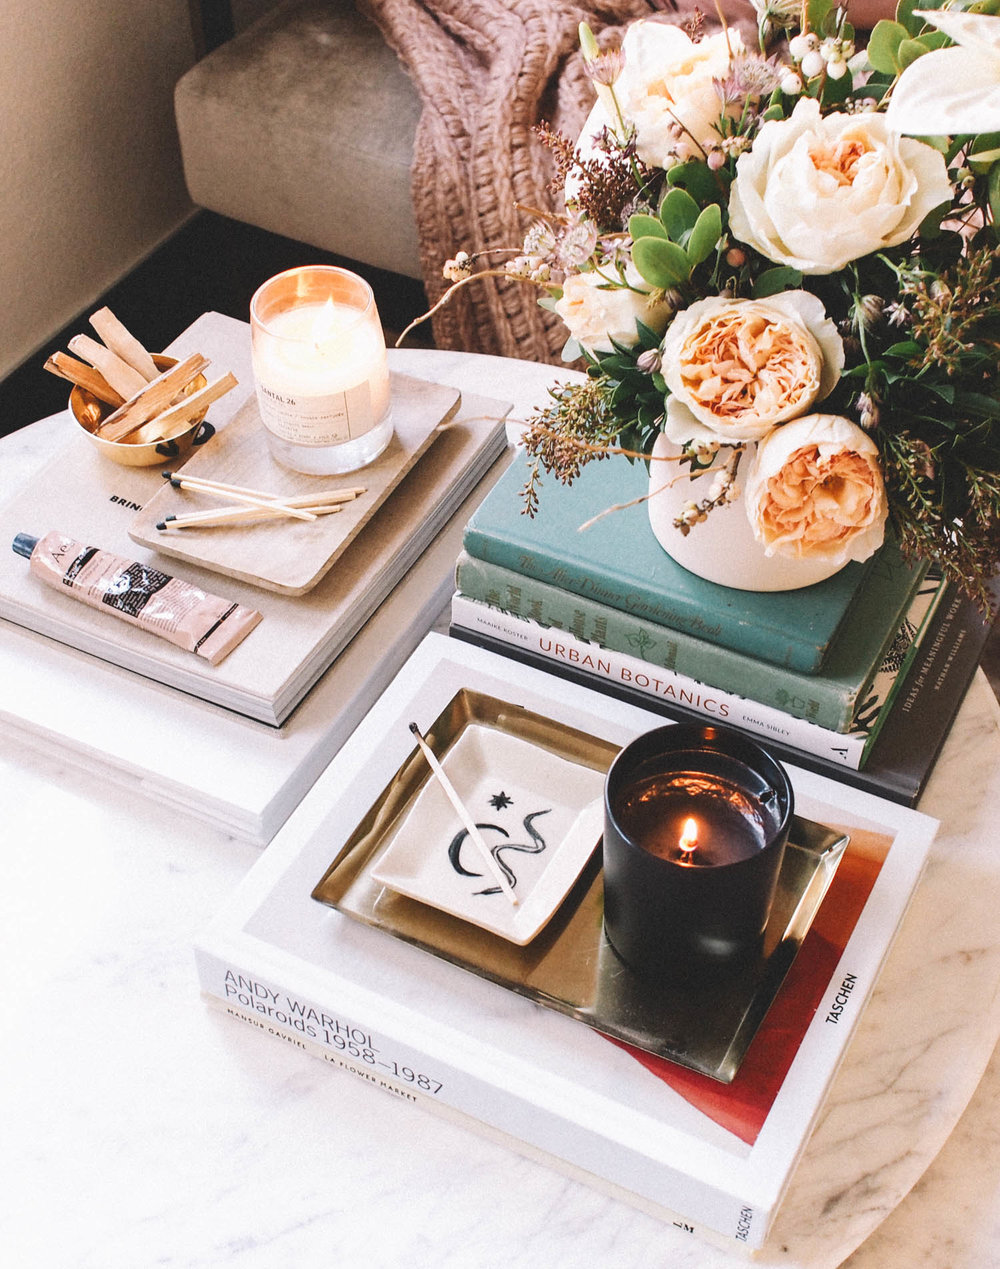 Còn gì lãng mạn hơn khi trên chiếc bàn nước của bạn, ngoài lọ hoa tươi xinh đẹp còn được trang trí thêm những lọ nến thơm và vài cuốn sách thú vị?